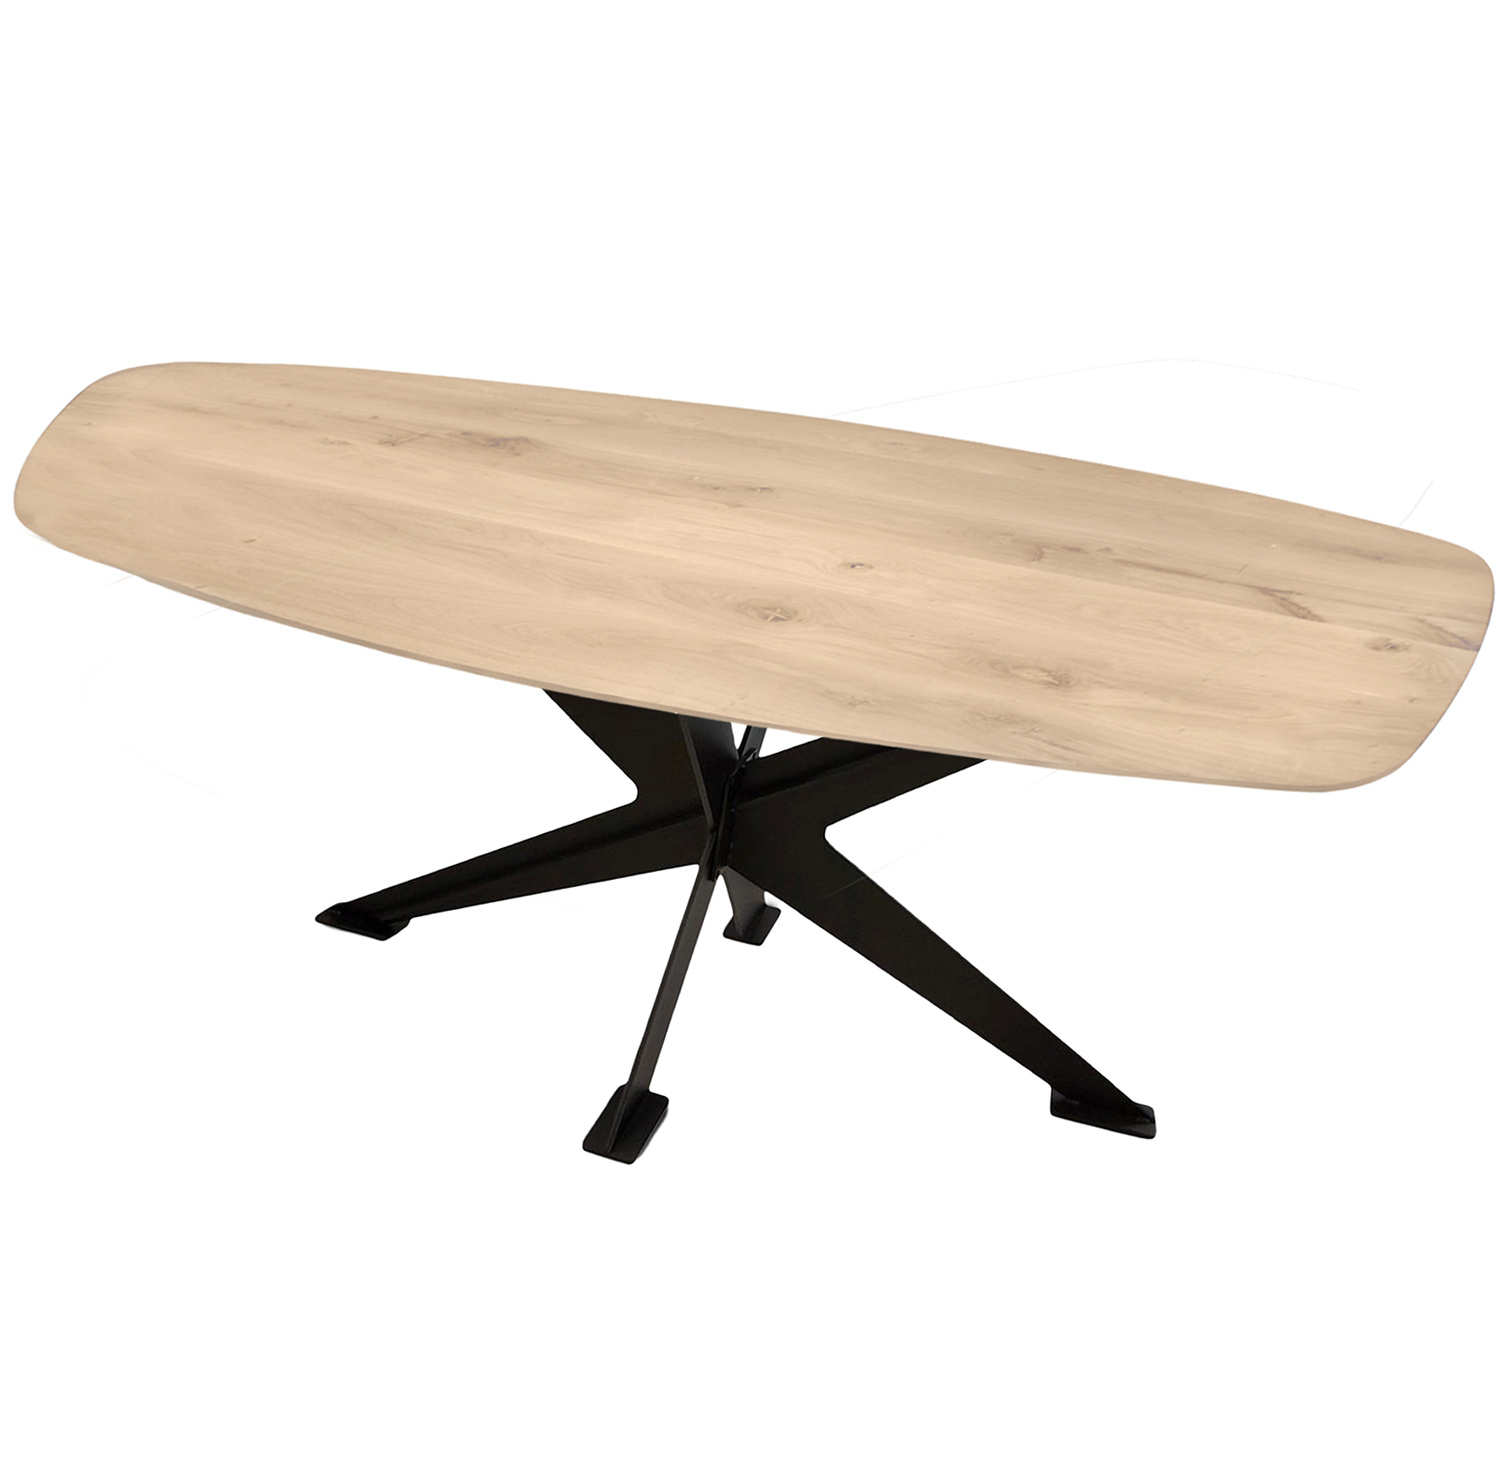  Tischplatte Eiche dänisch-oval - 2 cm dick - Eichenholz Rustikal - Bootsform Eiche Tischplatte massiv - HF 8-12%